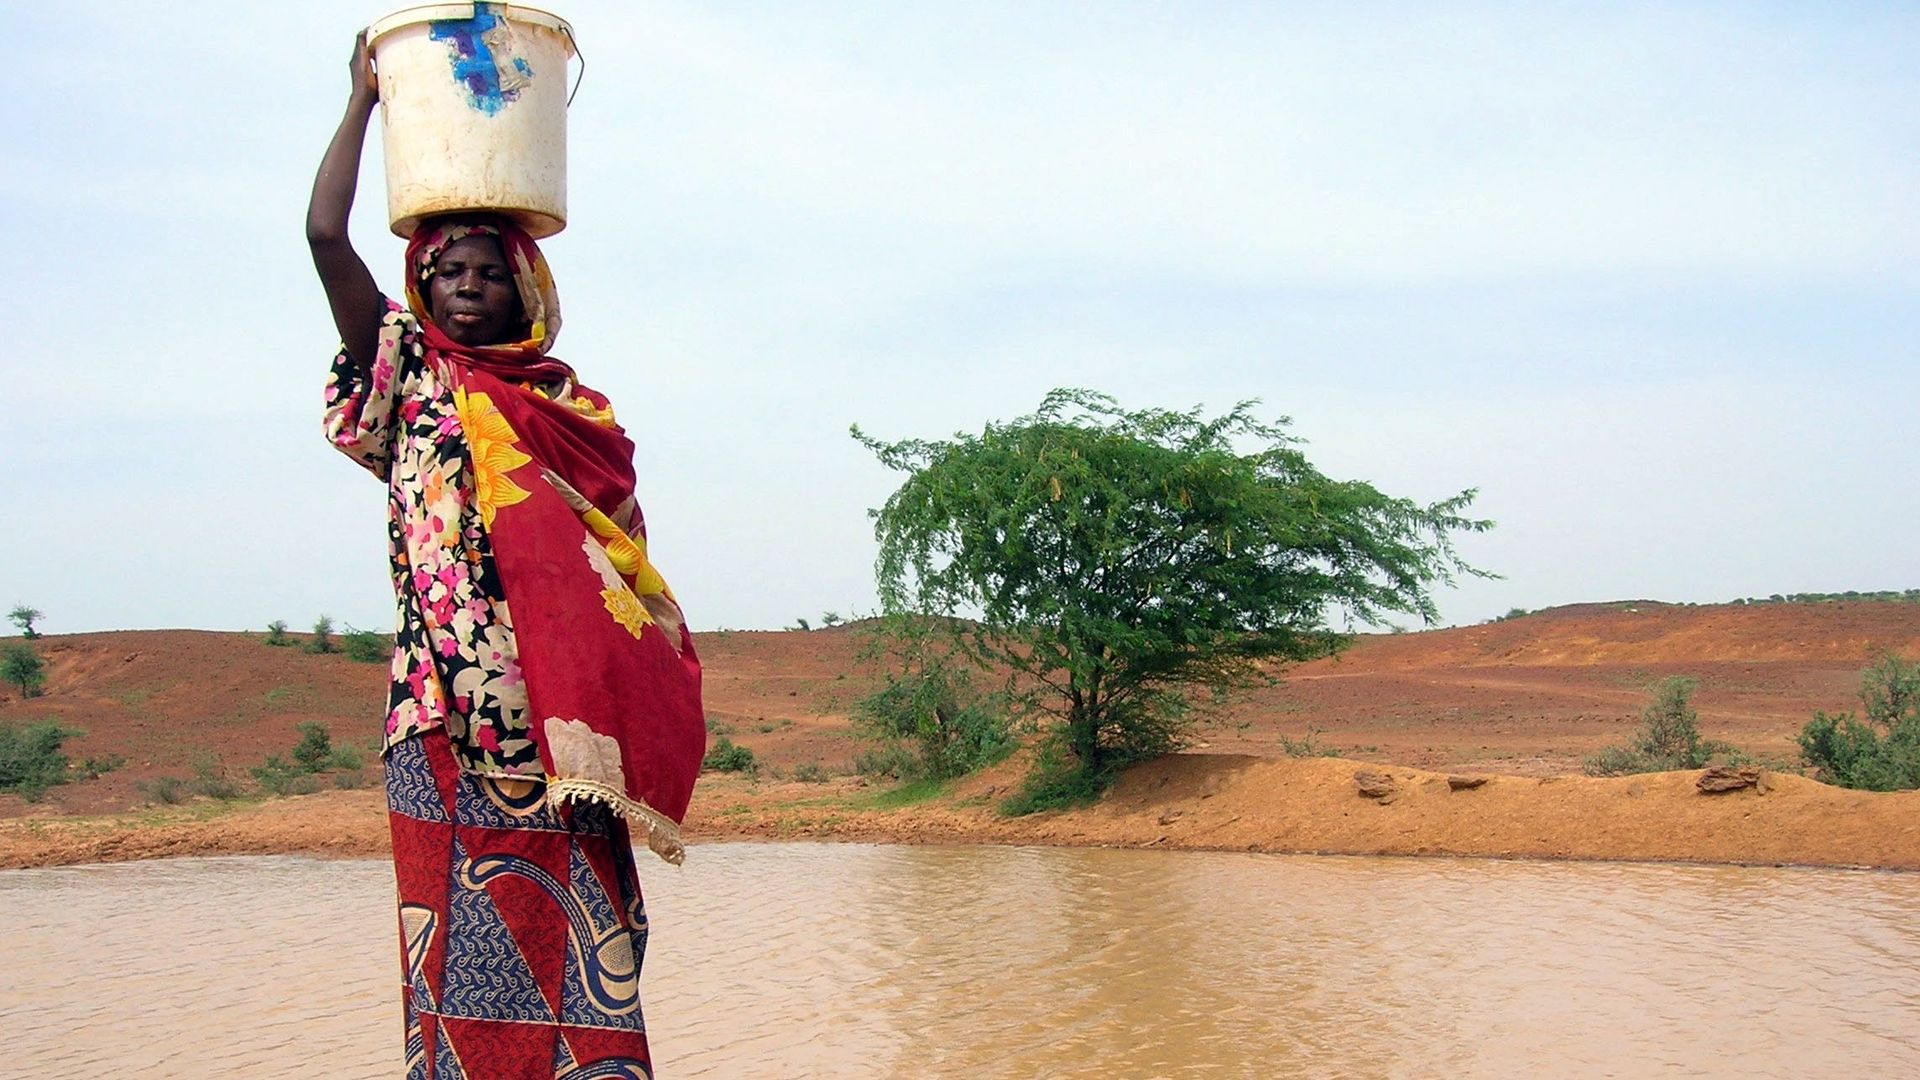 Une femme continue de s’approvisionner en eau dans une piscine infectée par le choléra le 29 août 2005 à Gounfara, au Niger, malgré les avertissements des services médicaux (image d’illustration).